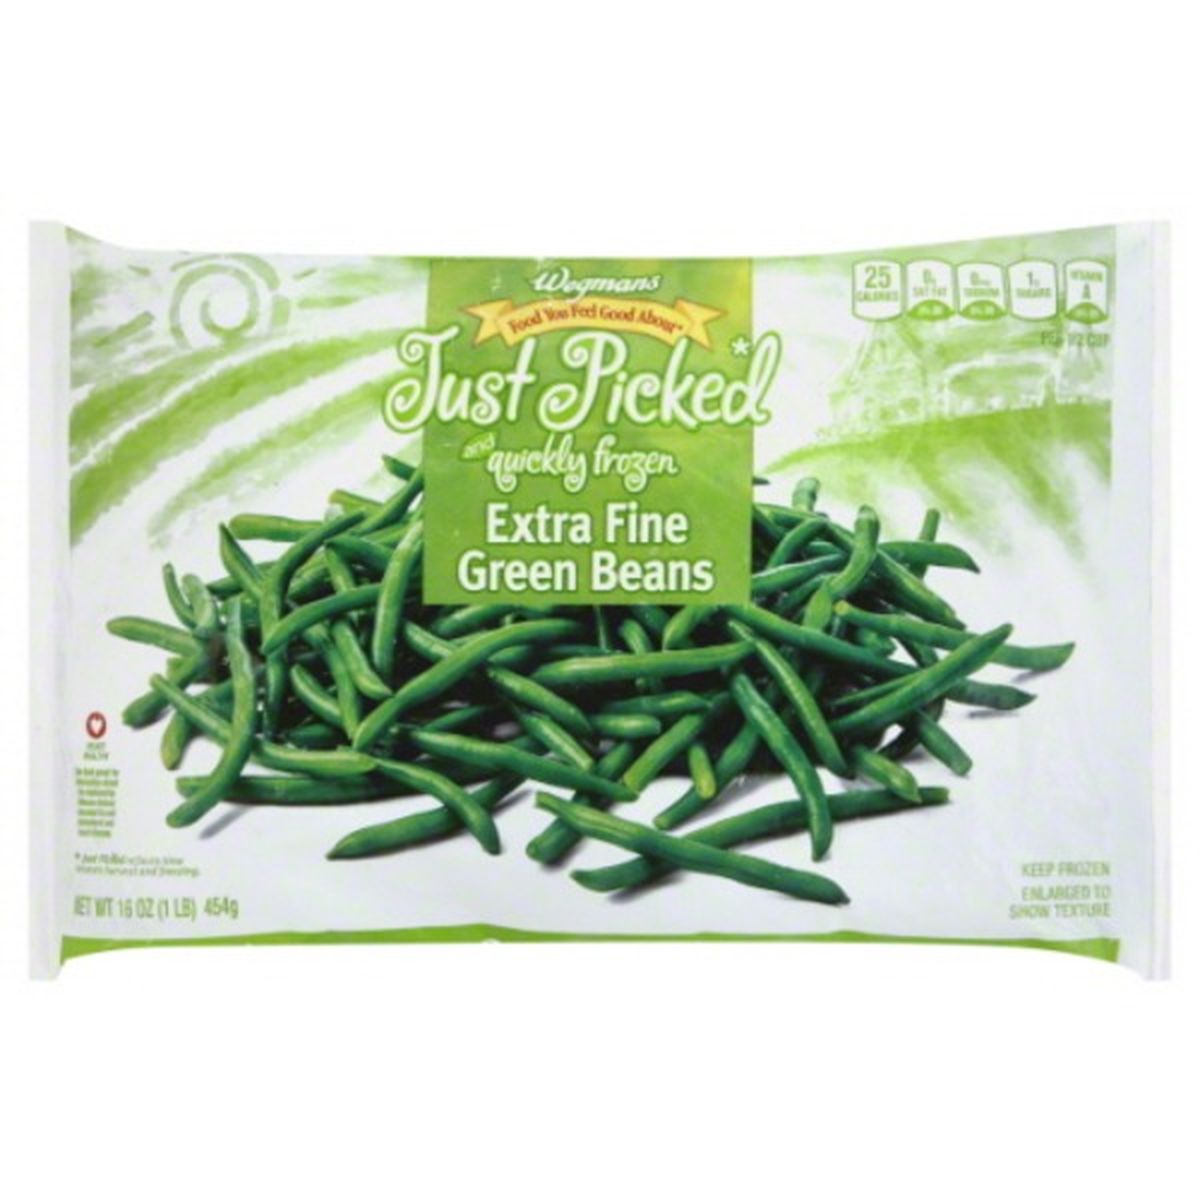 Calories in Wegmans Frozen Green Beans, Extra Fine